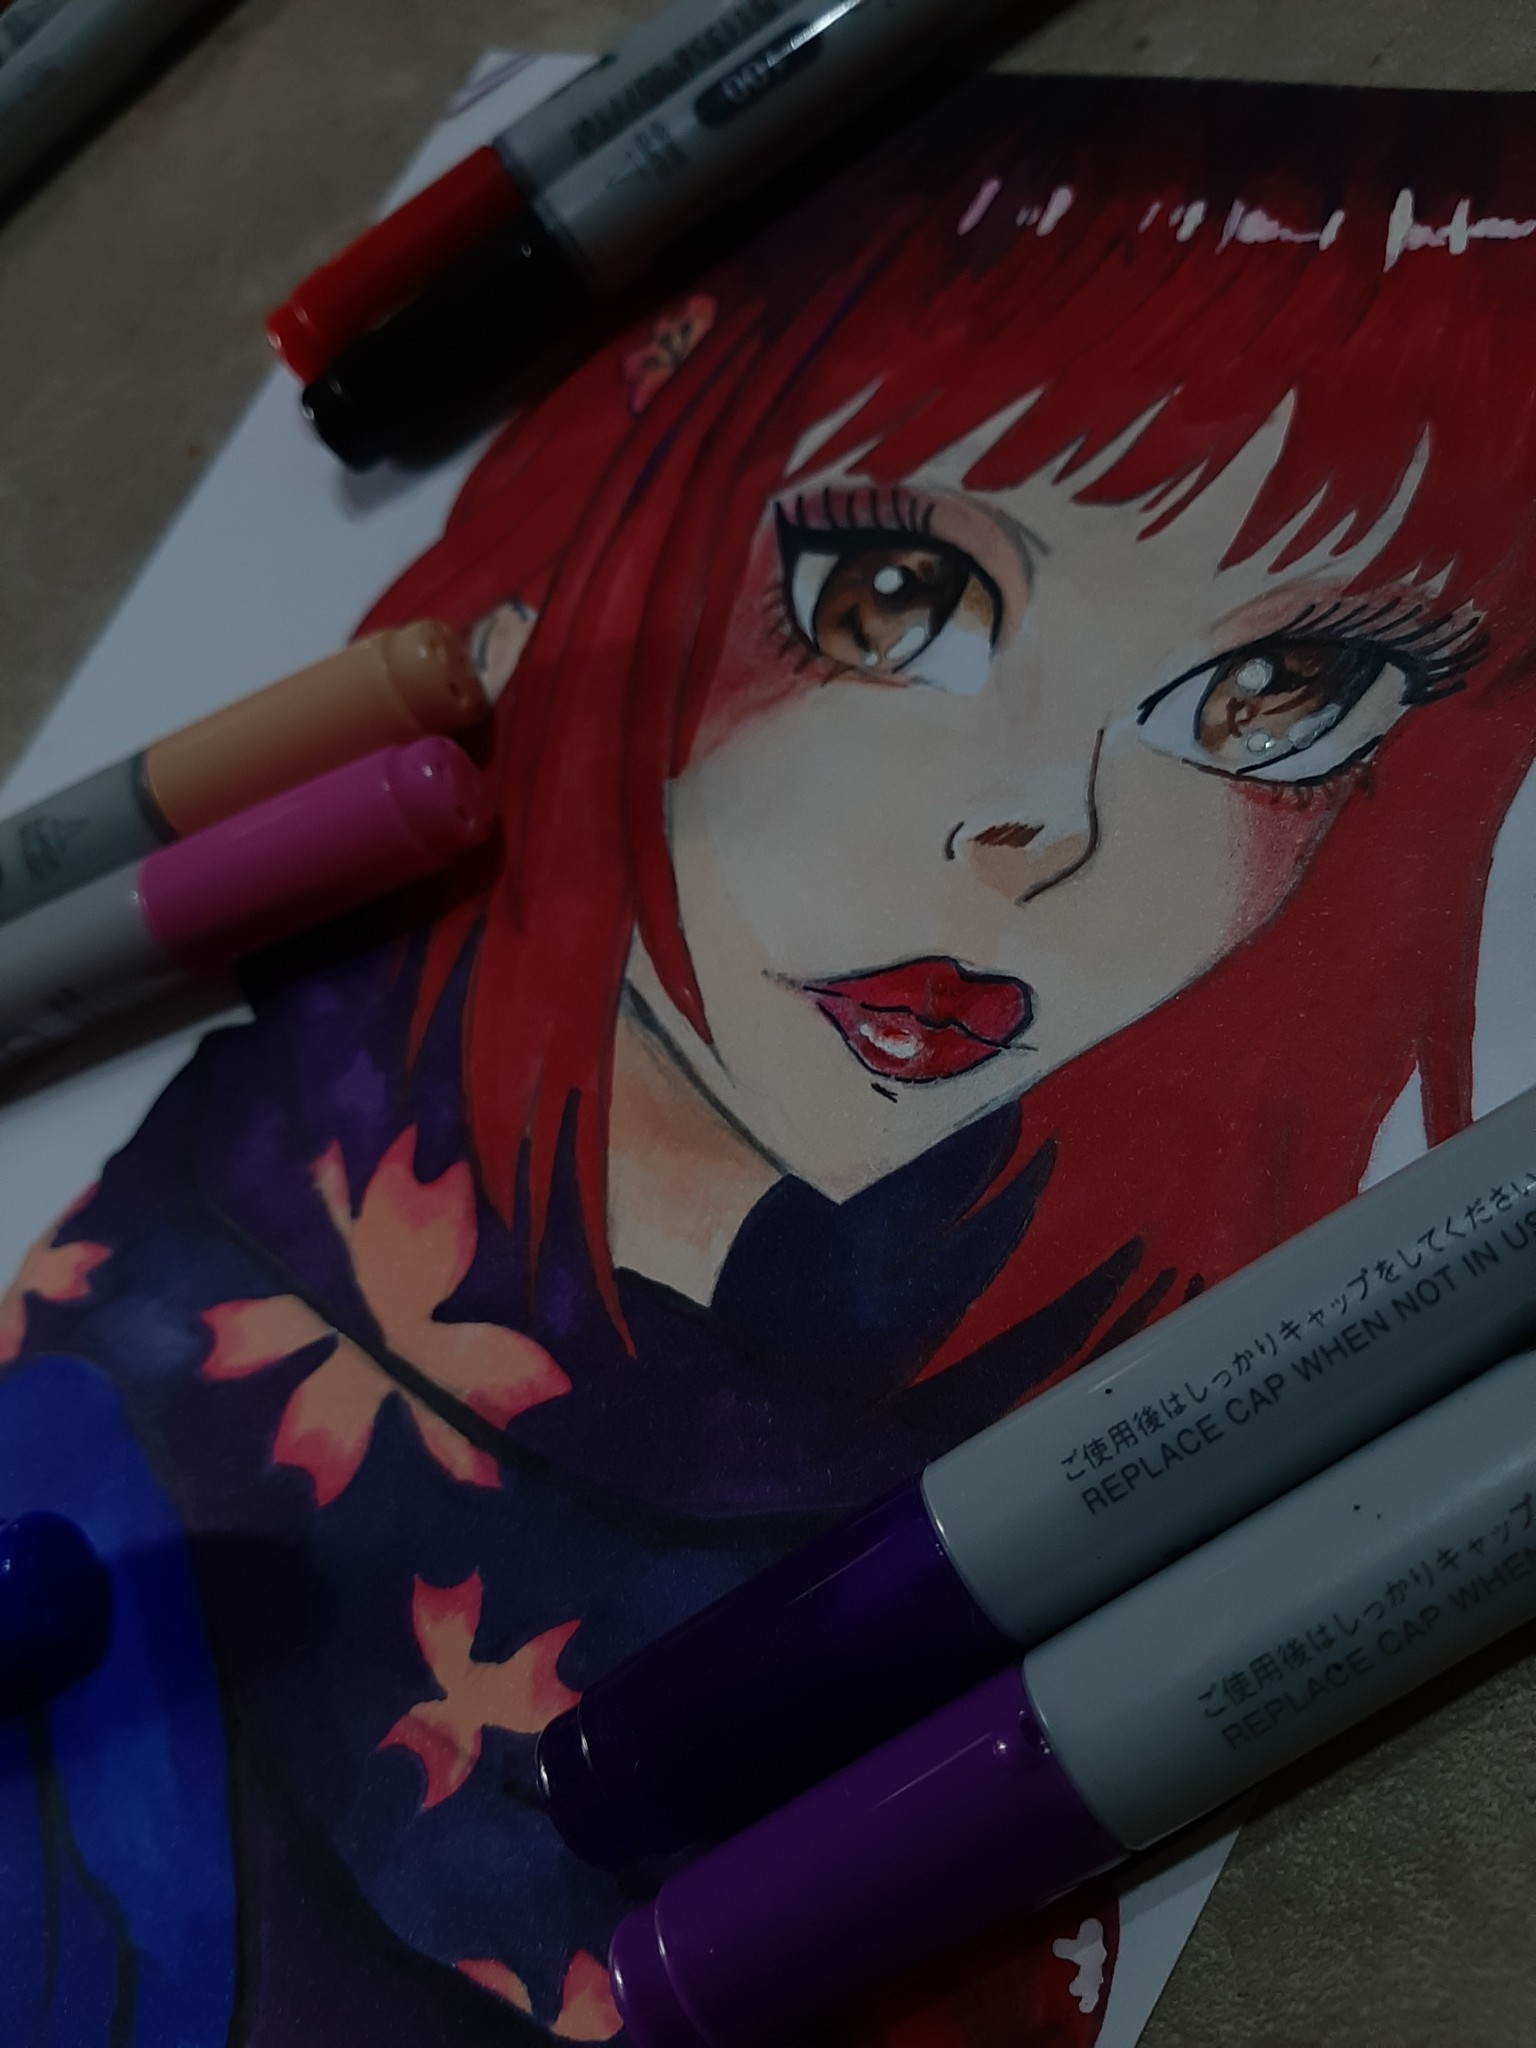 Lighane's Artblog - Anime Me / Selfie Art / Copic Marker